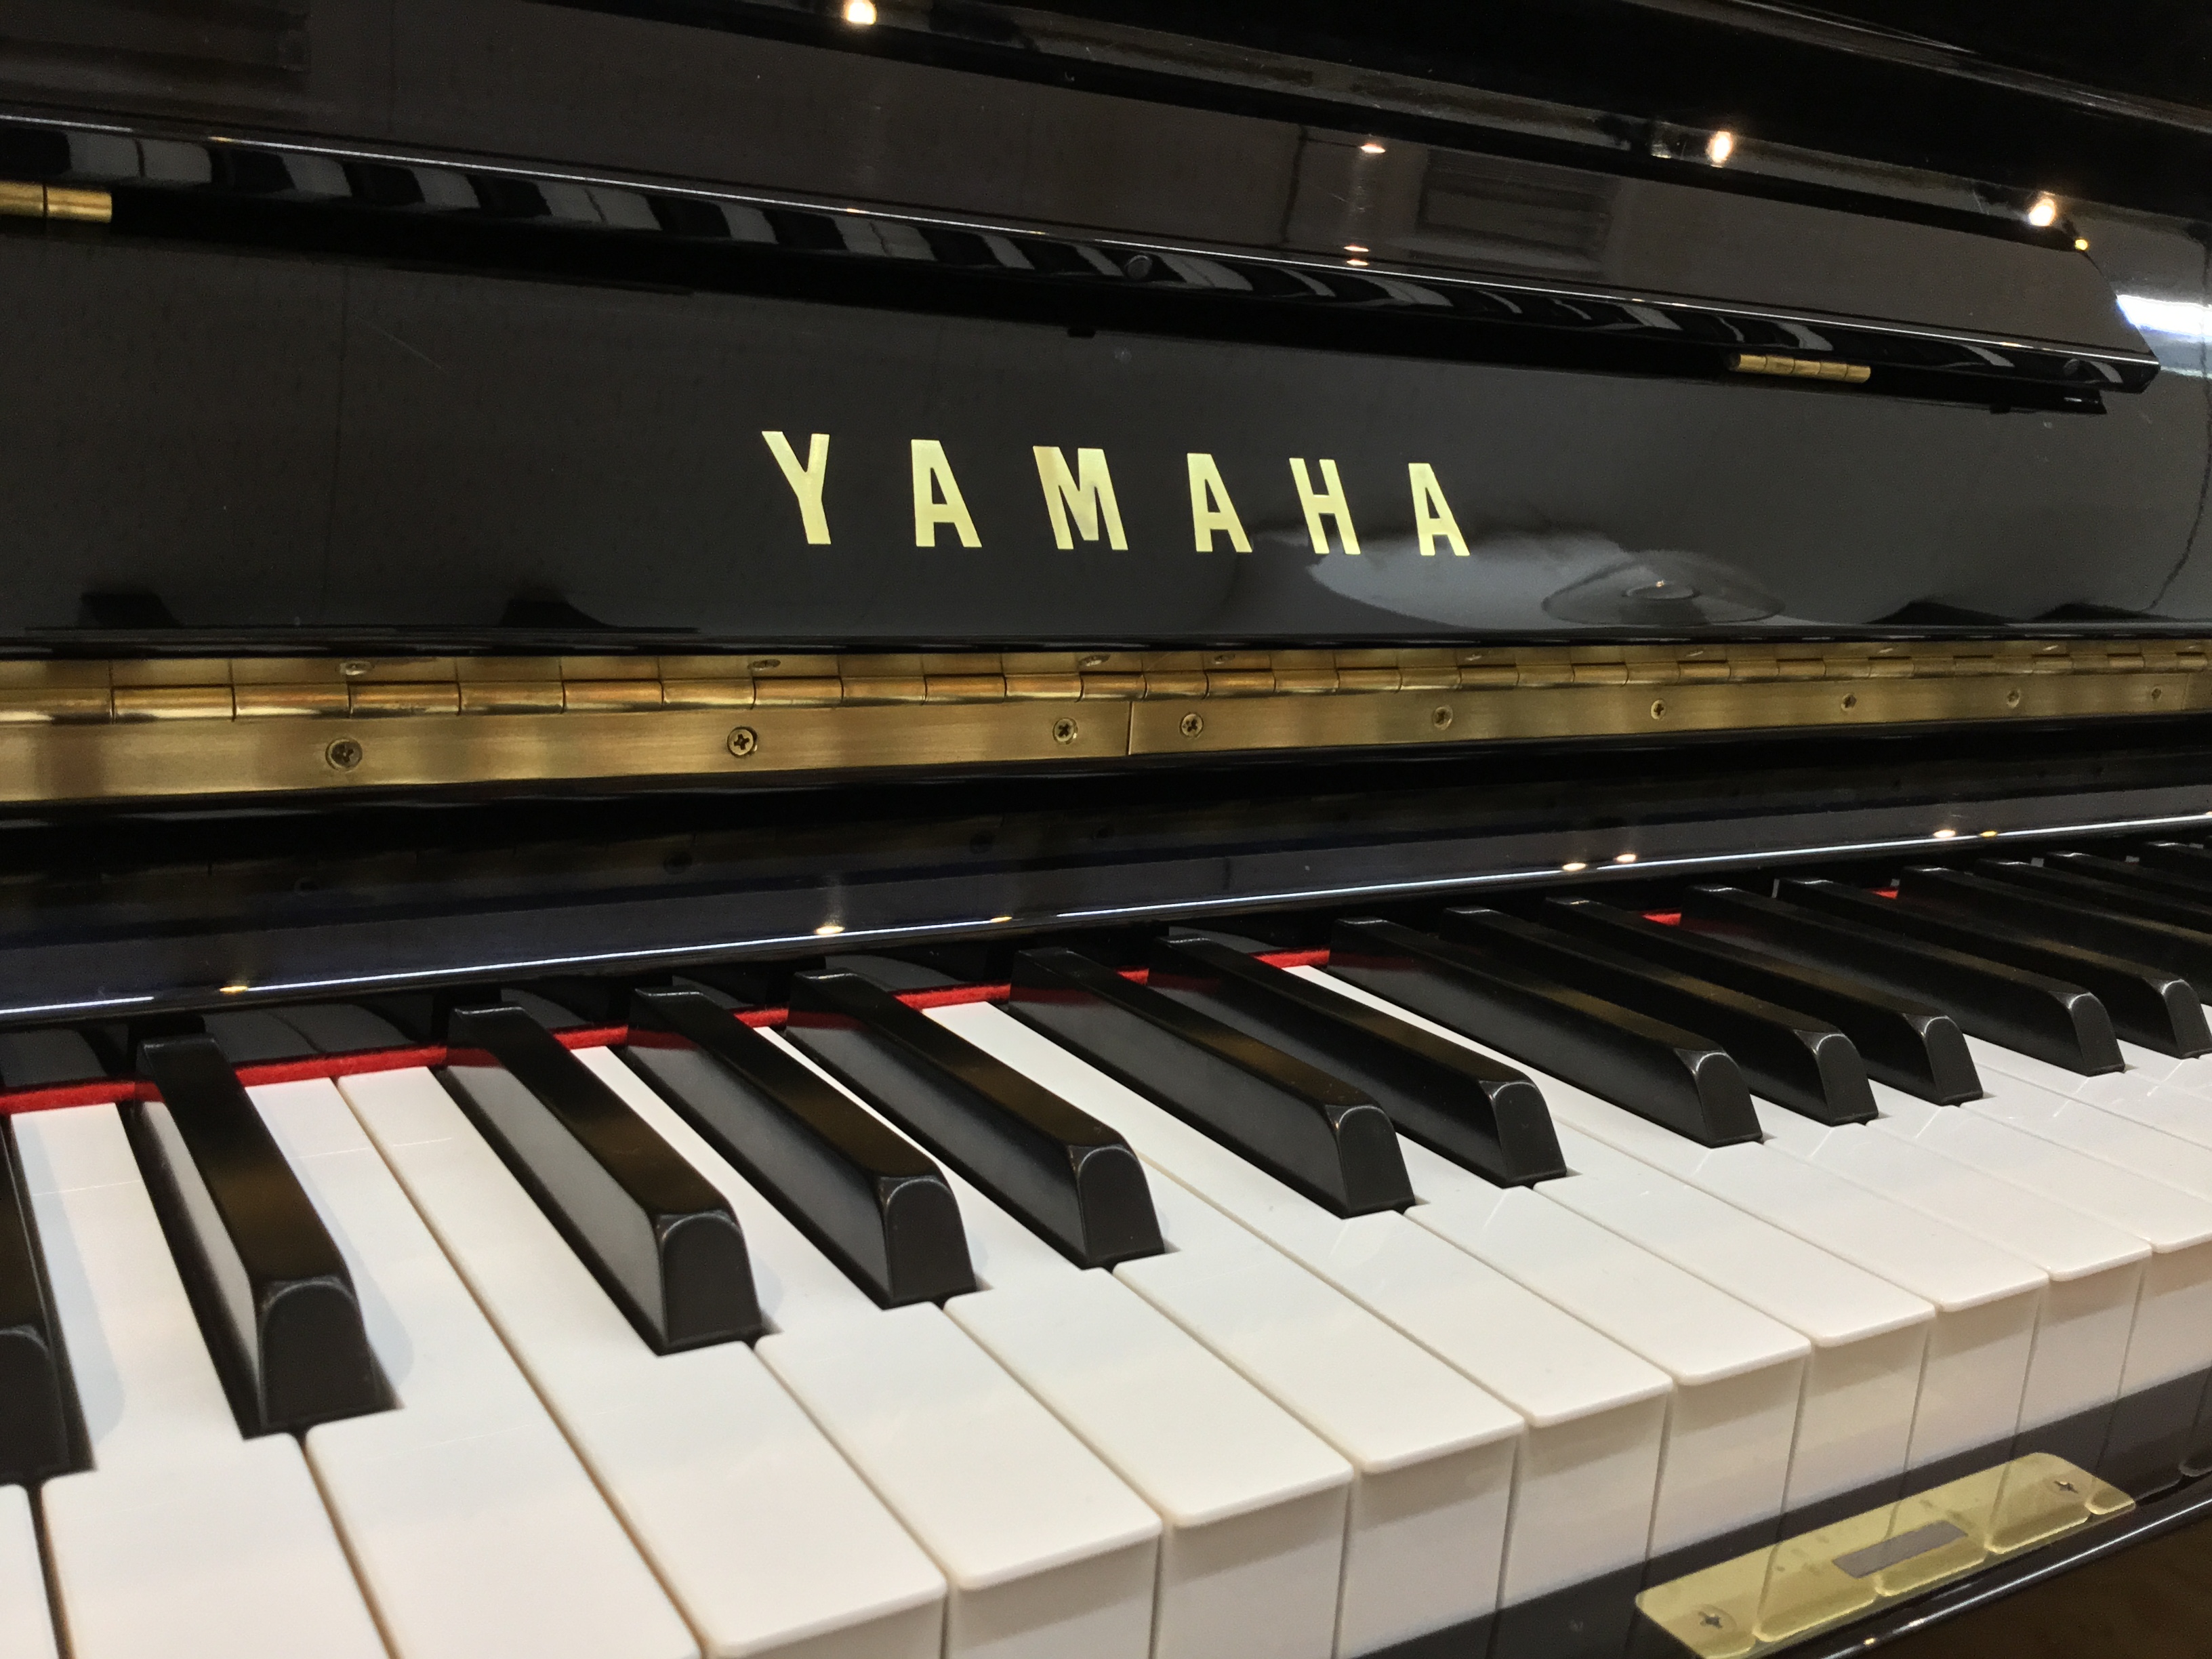 ヤマハの中古ピアノでは指折りの人気ピアノUX3が入荷しました。